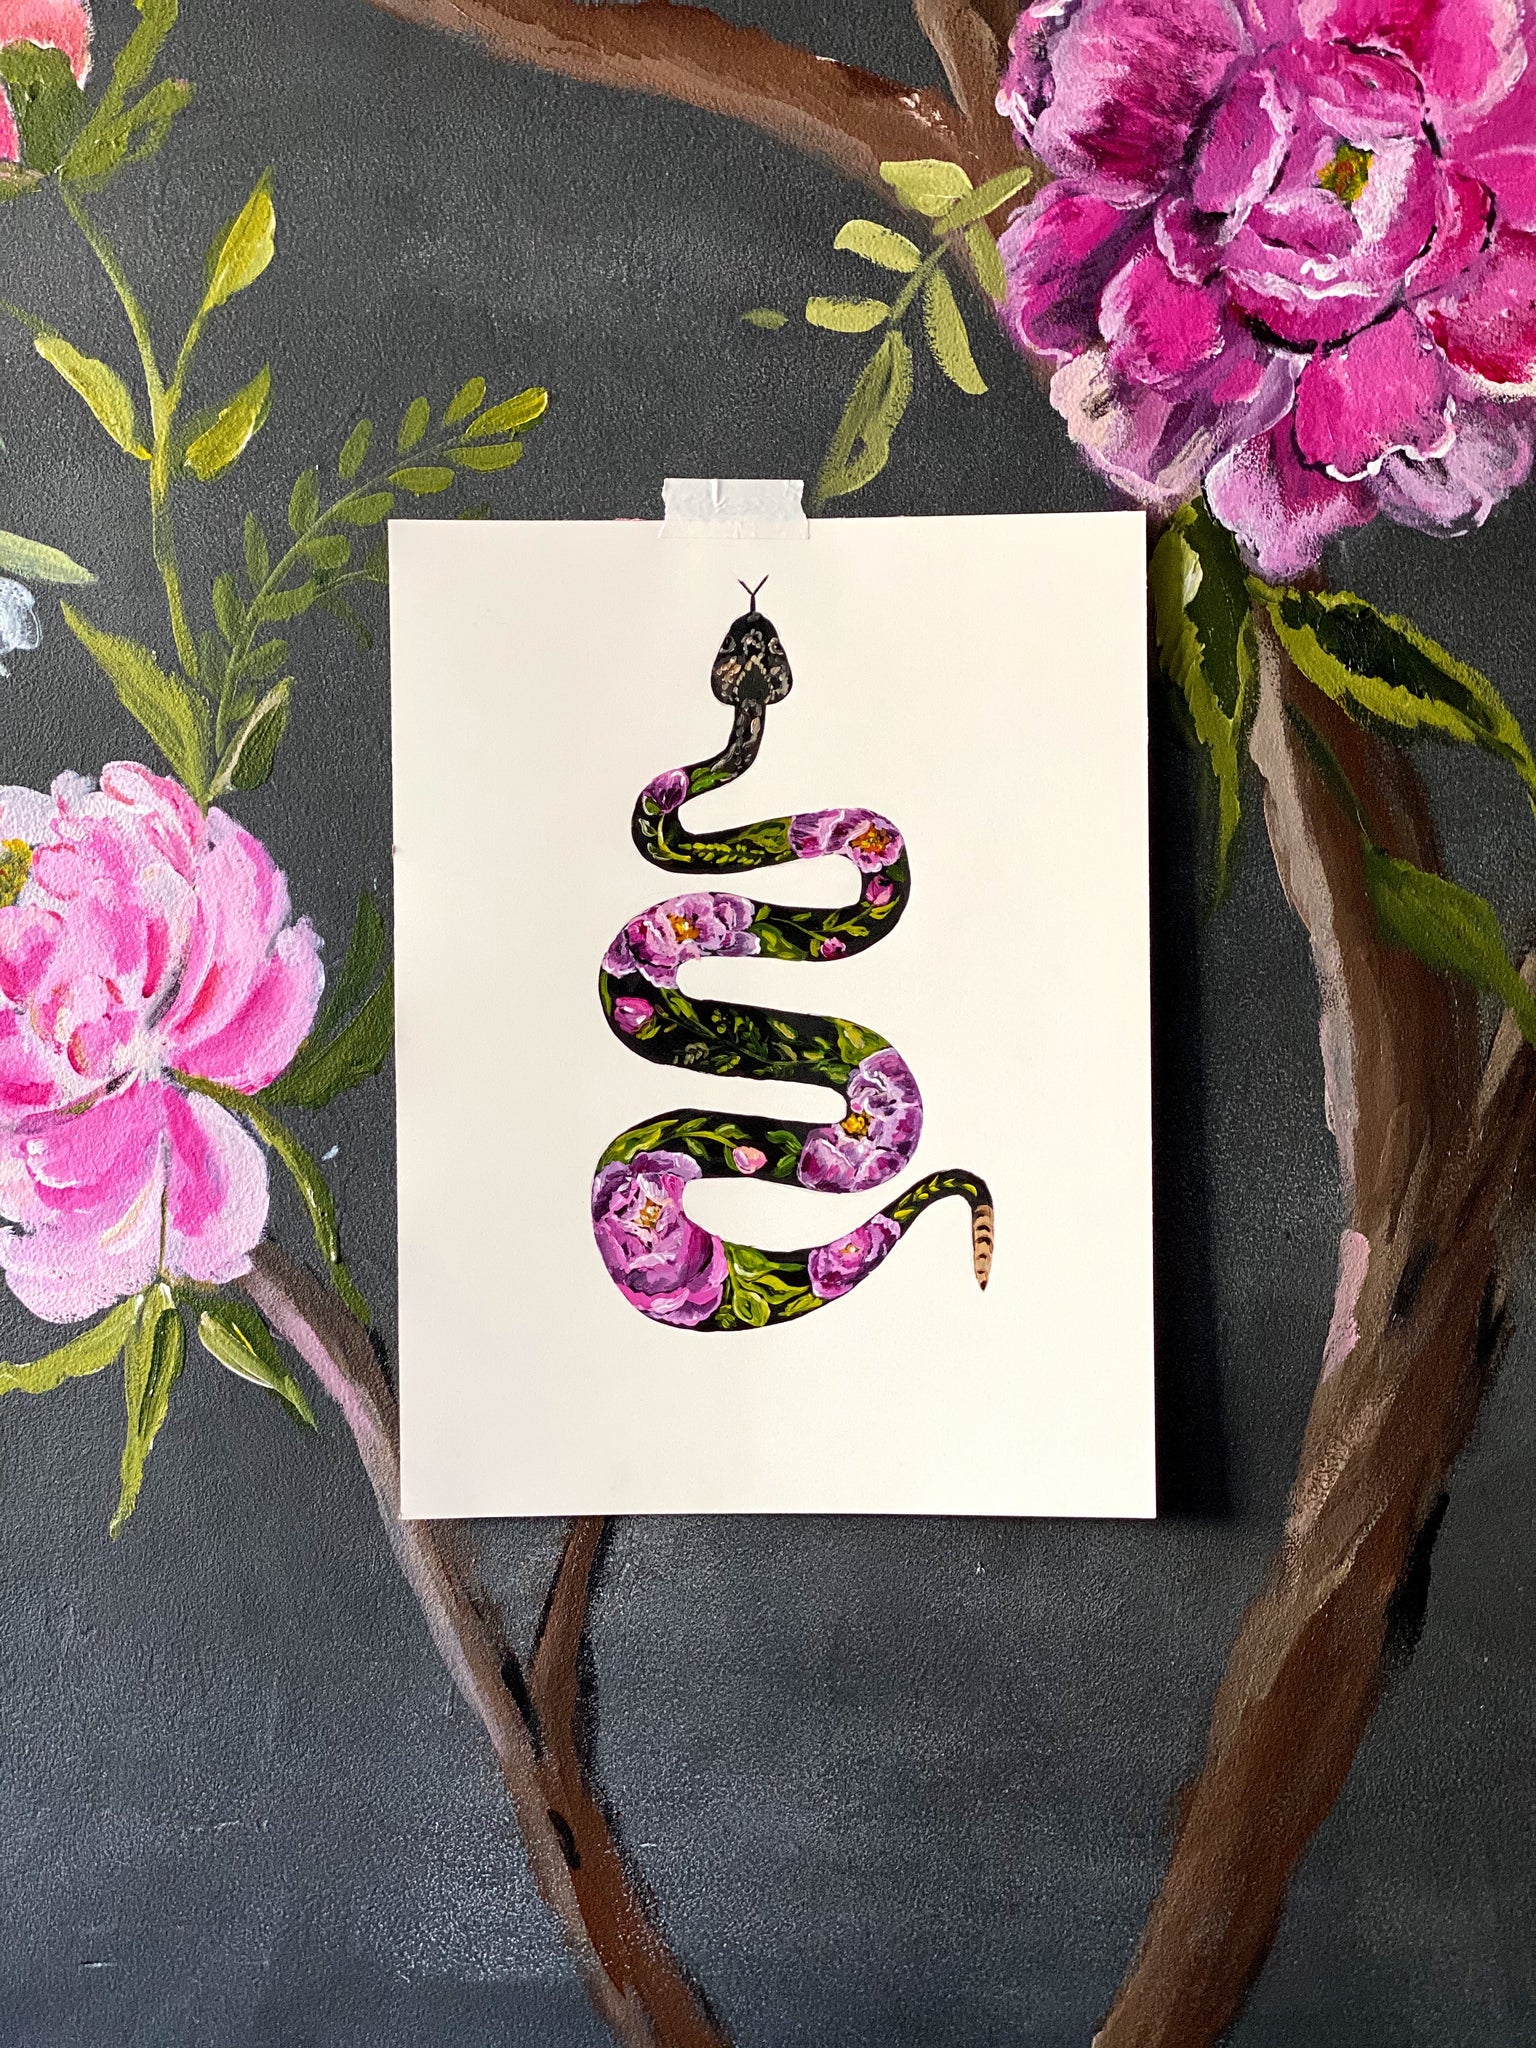 Bari J. Serpiente Floral. Colección de hembras feroces